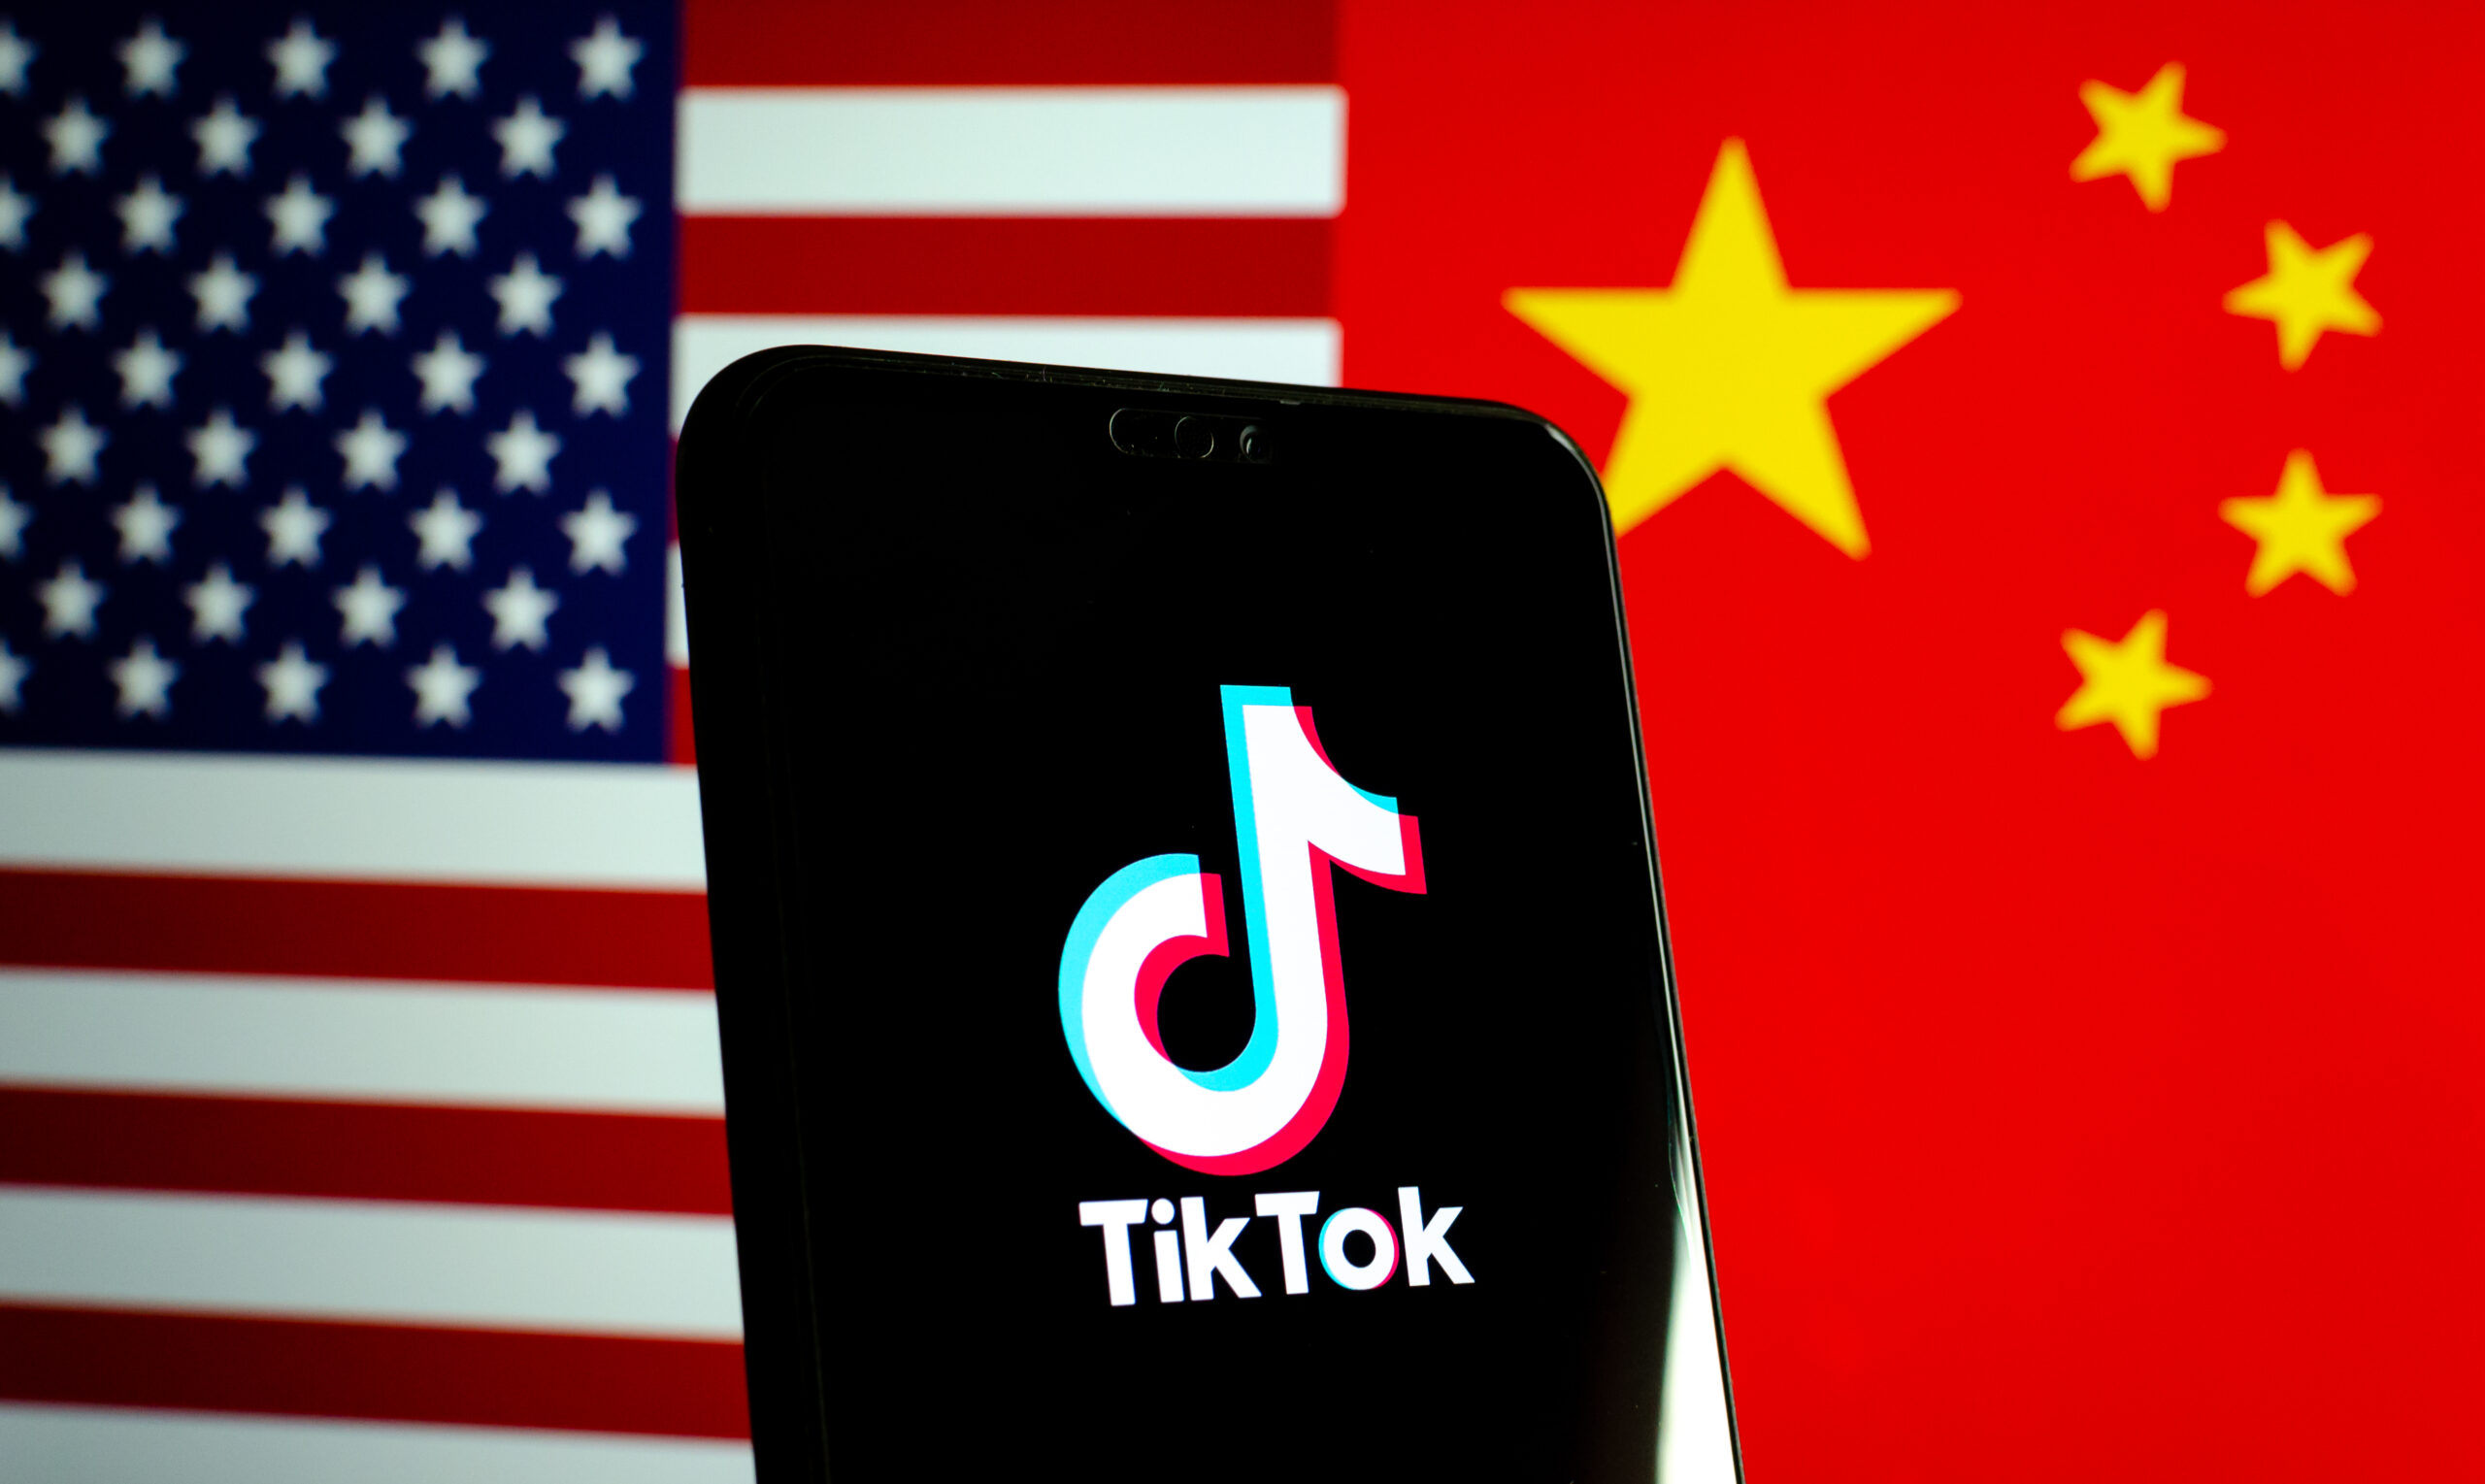 Do You Know Who TikTok’s CEO Shou Zi Chew is?